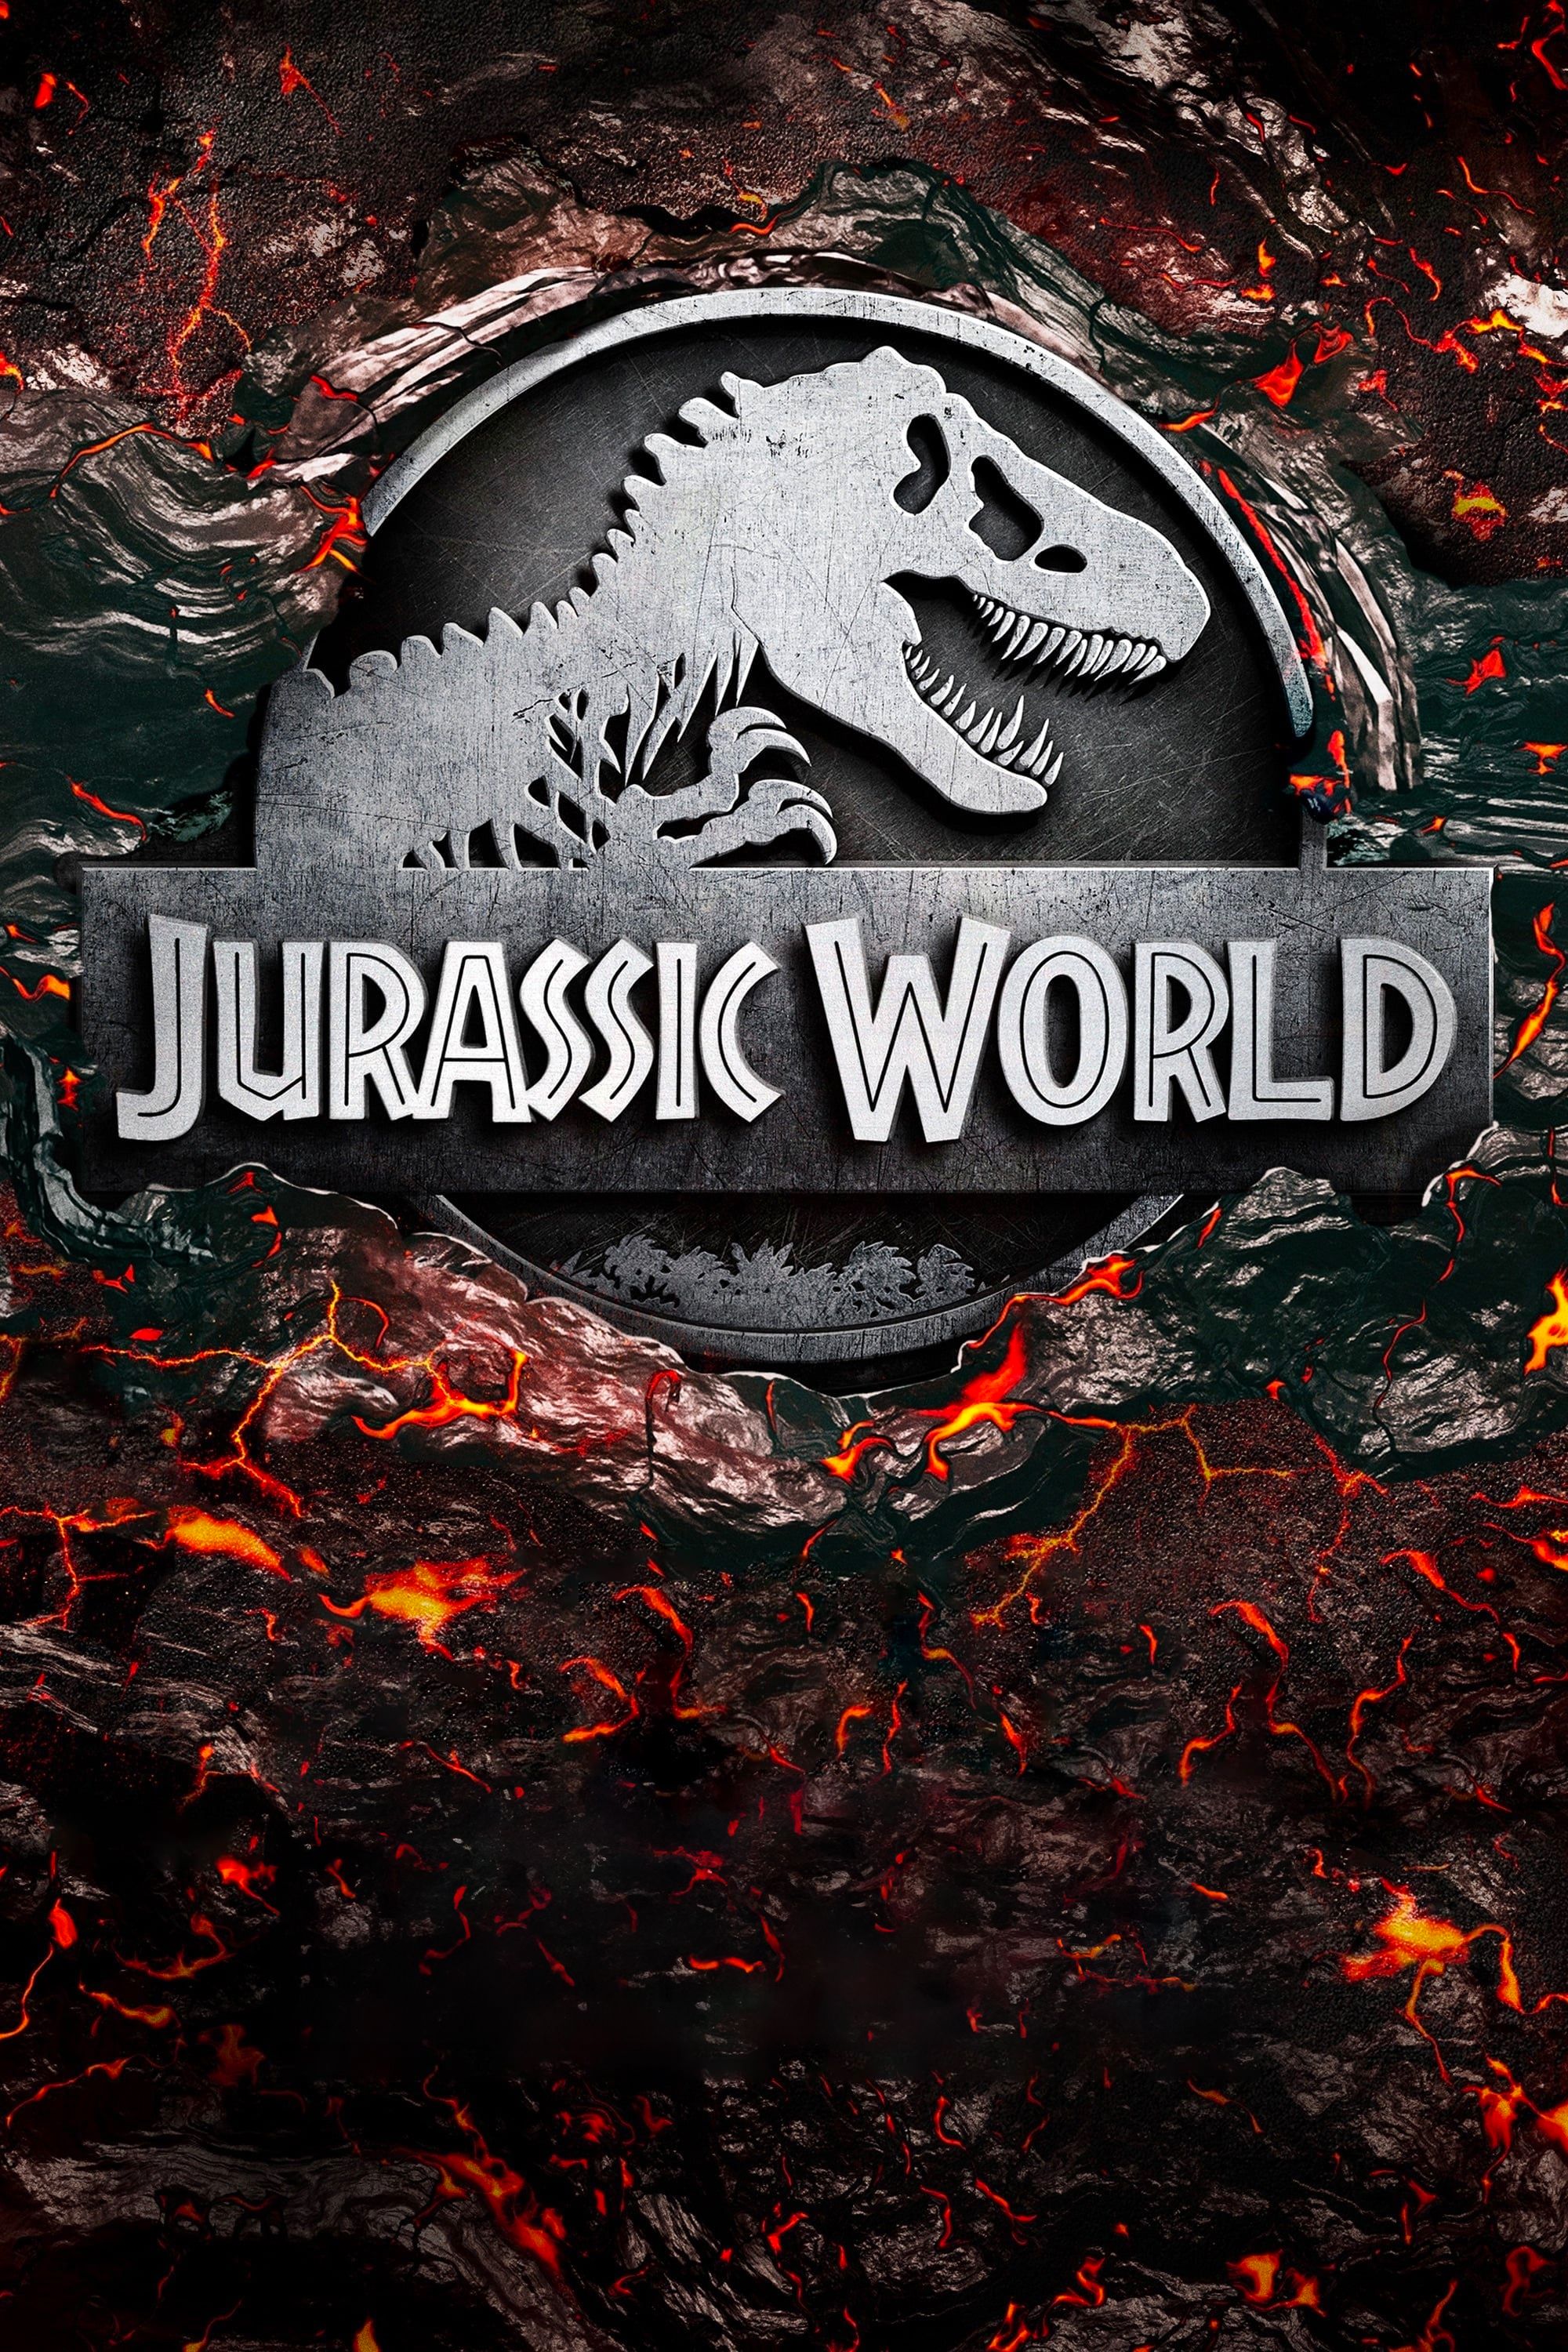 Póster de la película Jurassic World que muestra el logo del dinosaurio enterrado en lava